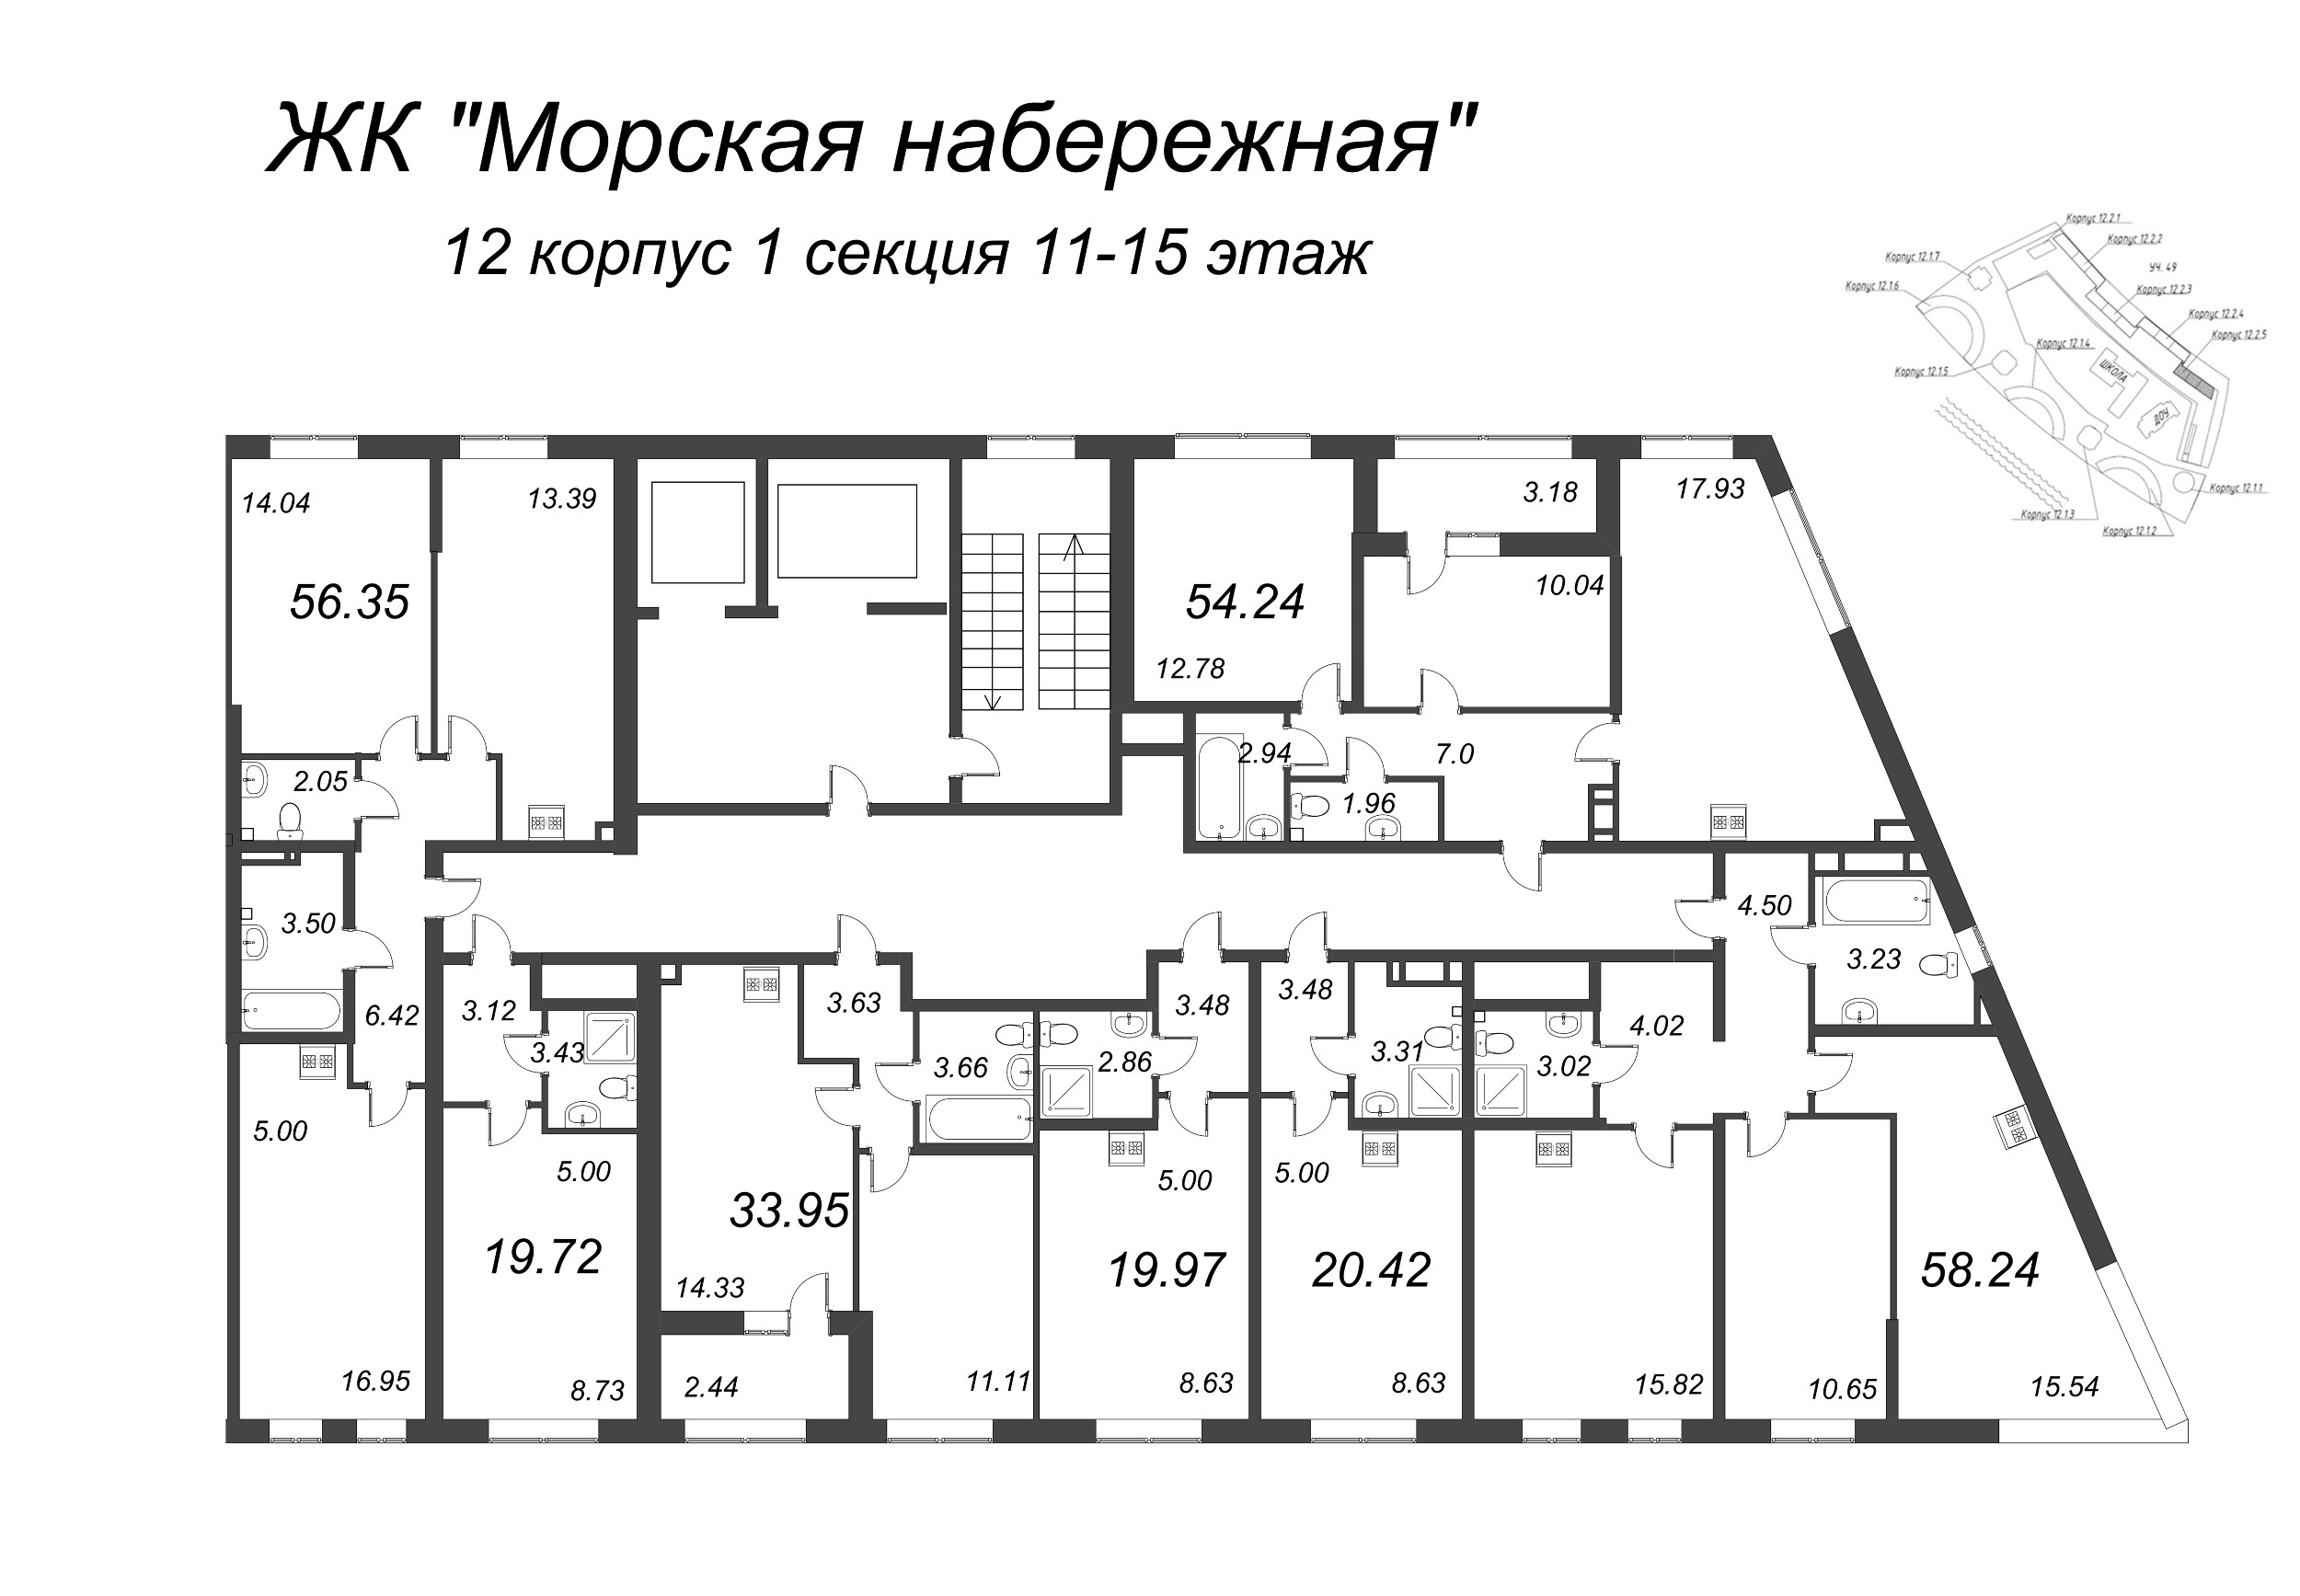 3-комнатная (Евро) квартира, 56.35 м² в ЖК "Морская набережная" - планировка этажа